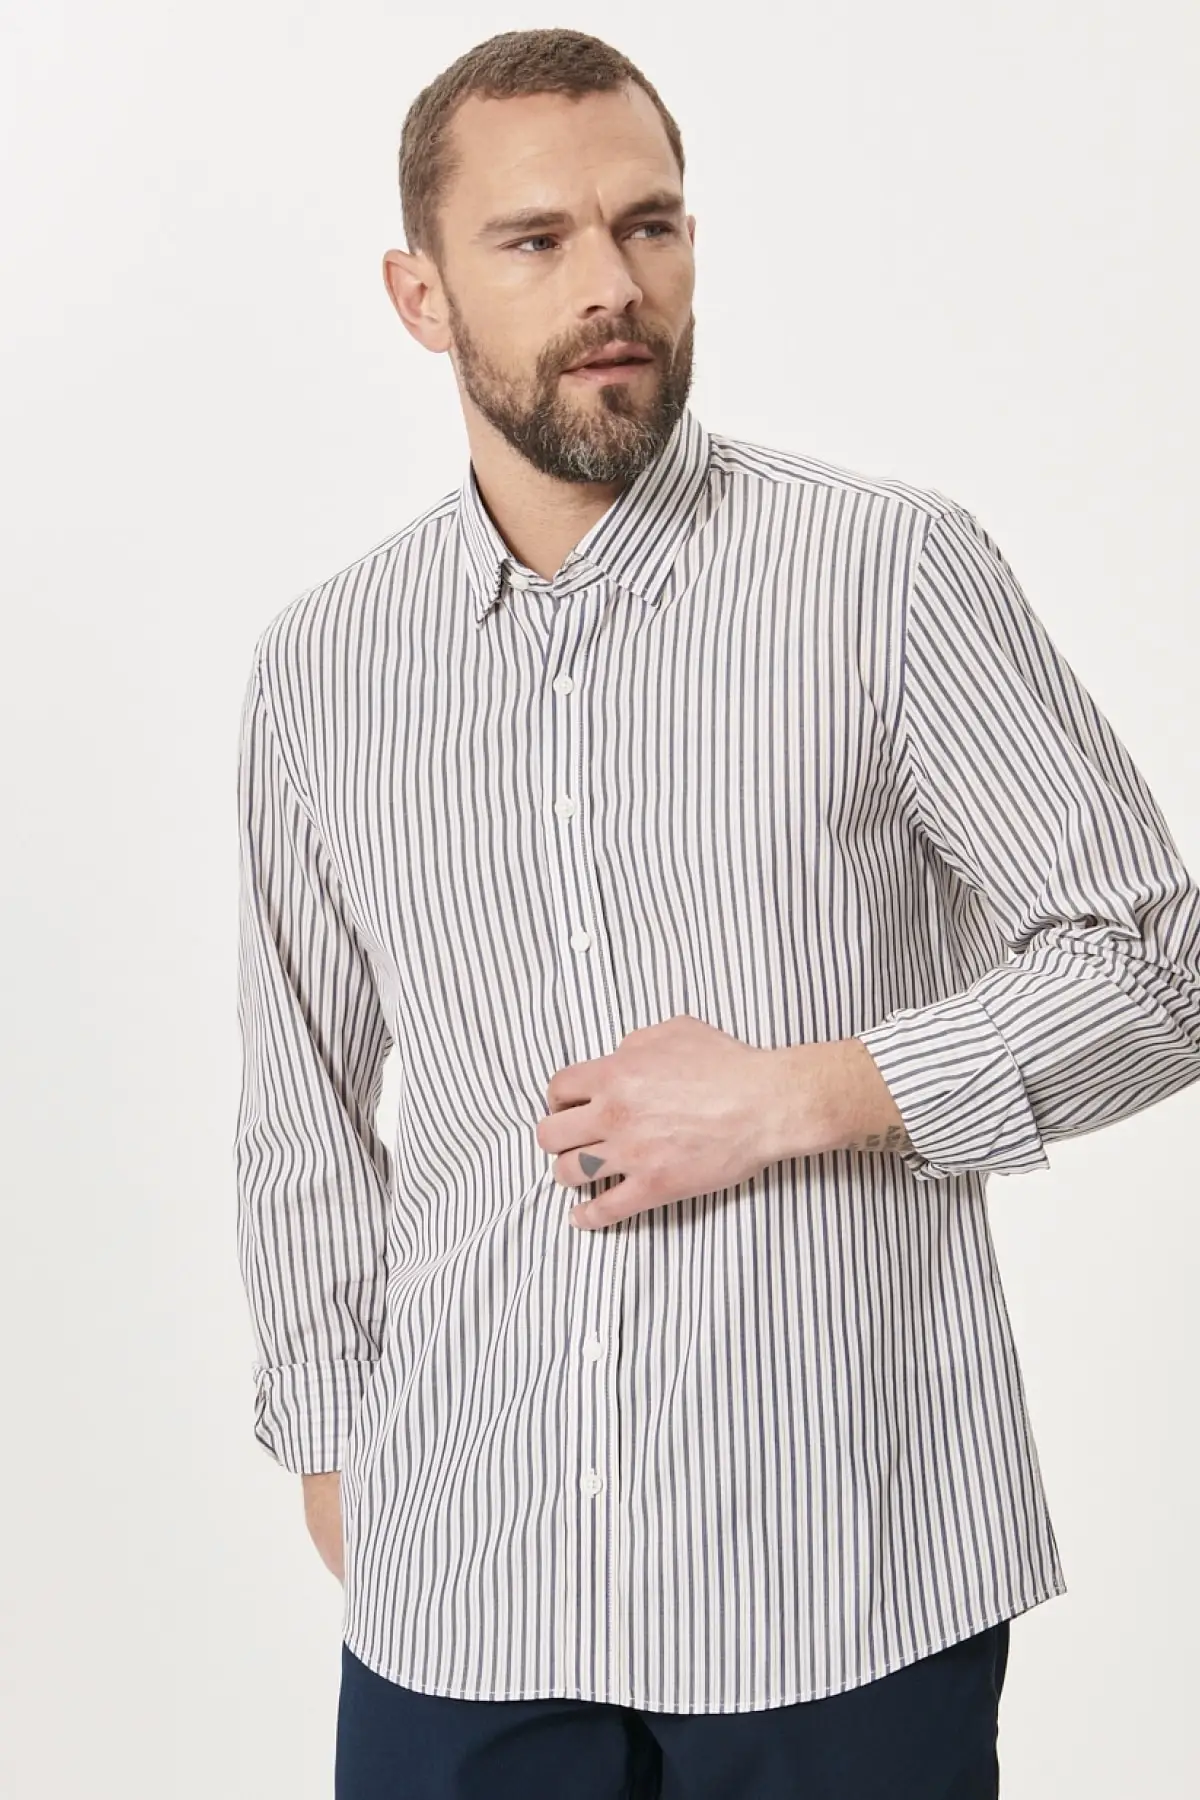 

Мужская приталенная рубашка из 100% хлопка в полоску, с воротником на пуговицах, бело-темно-синего цвета